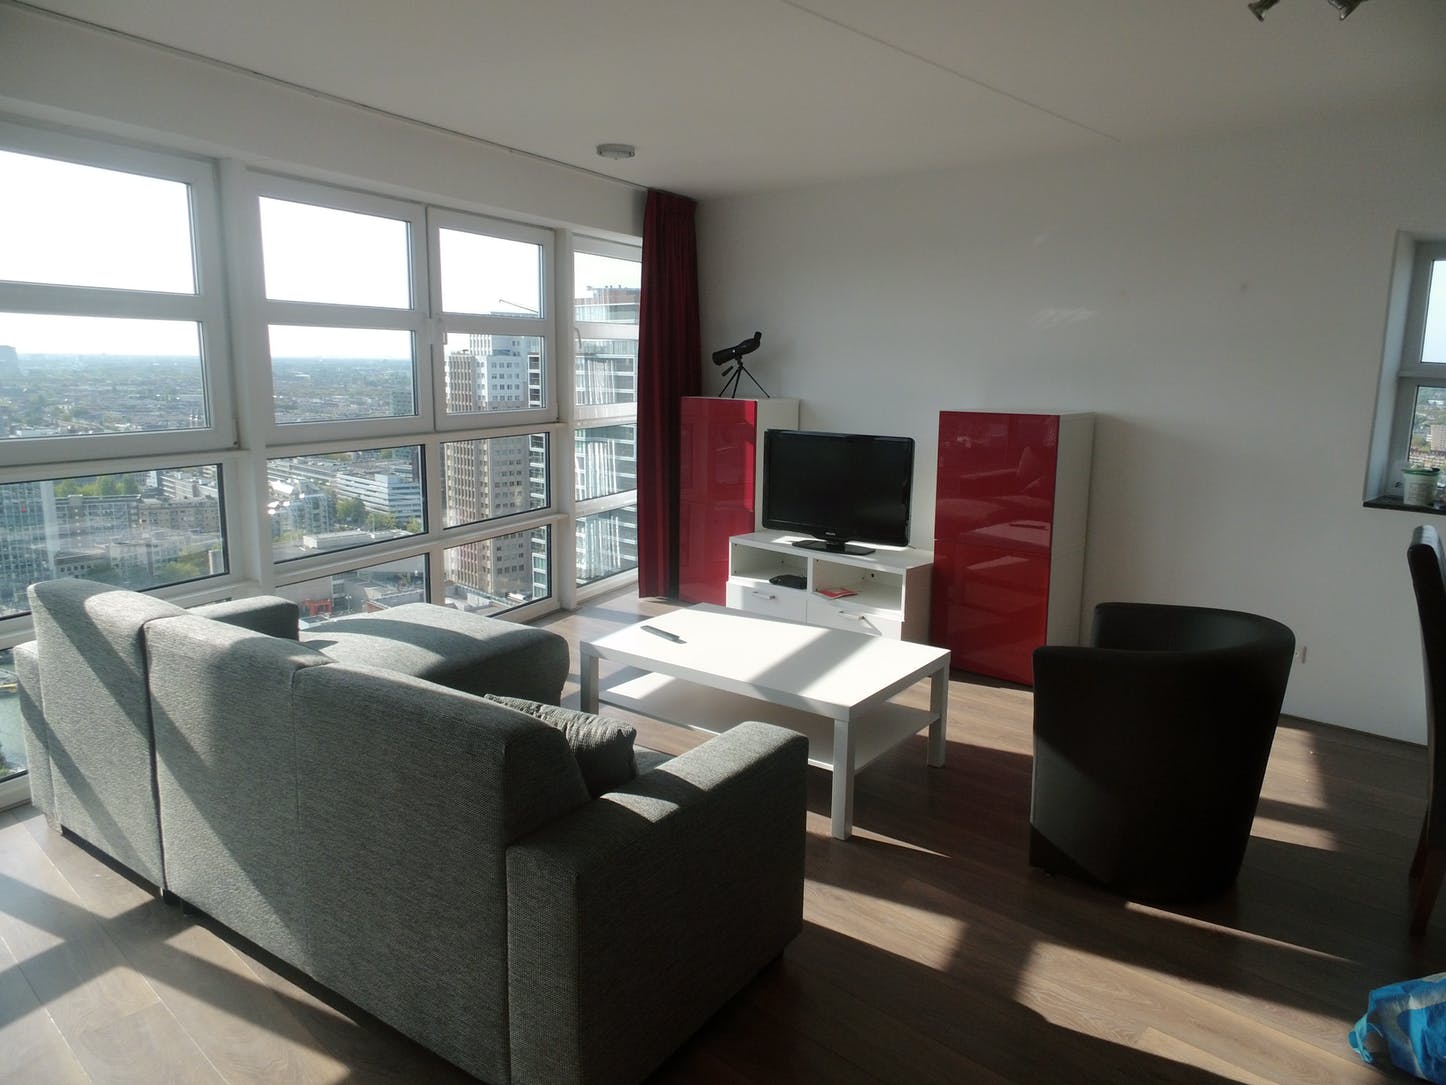 Wijnbrug - Luxury expat apartment in Rotterdam